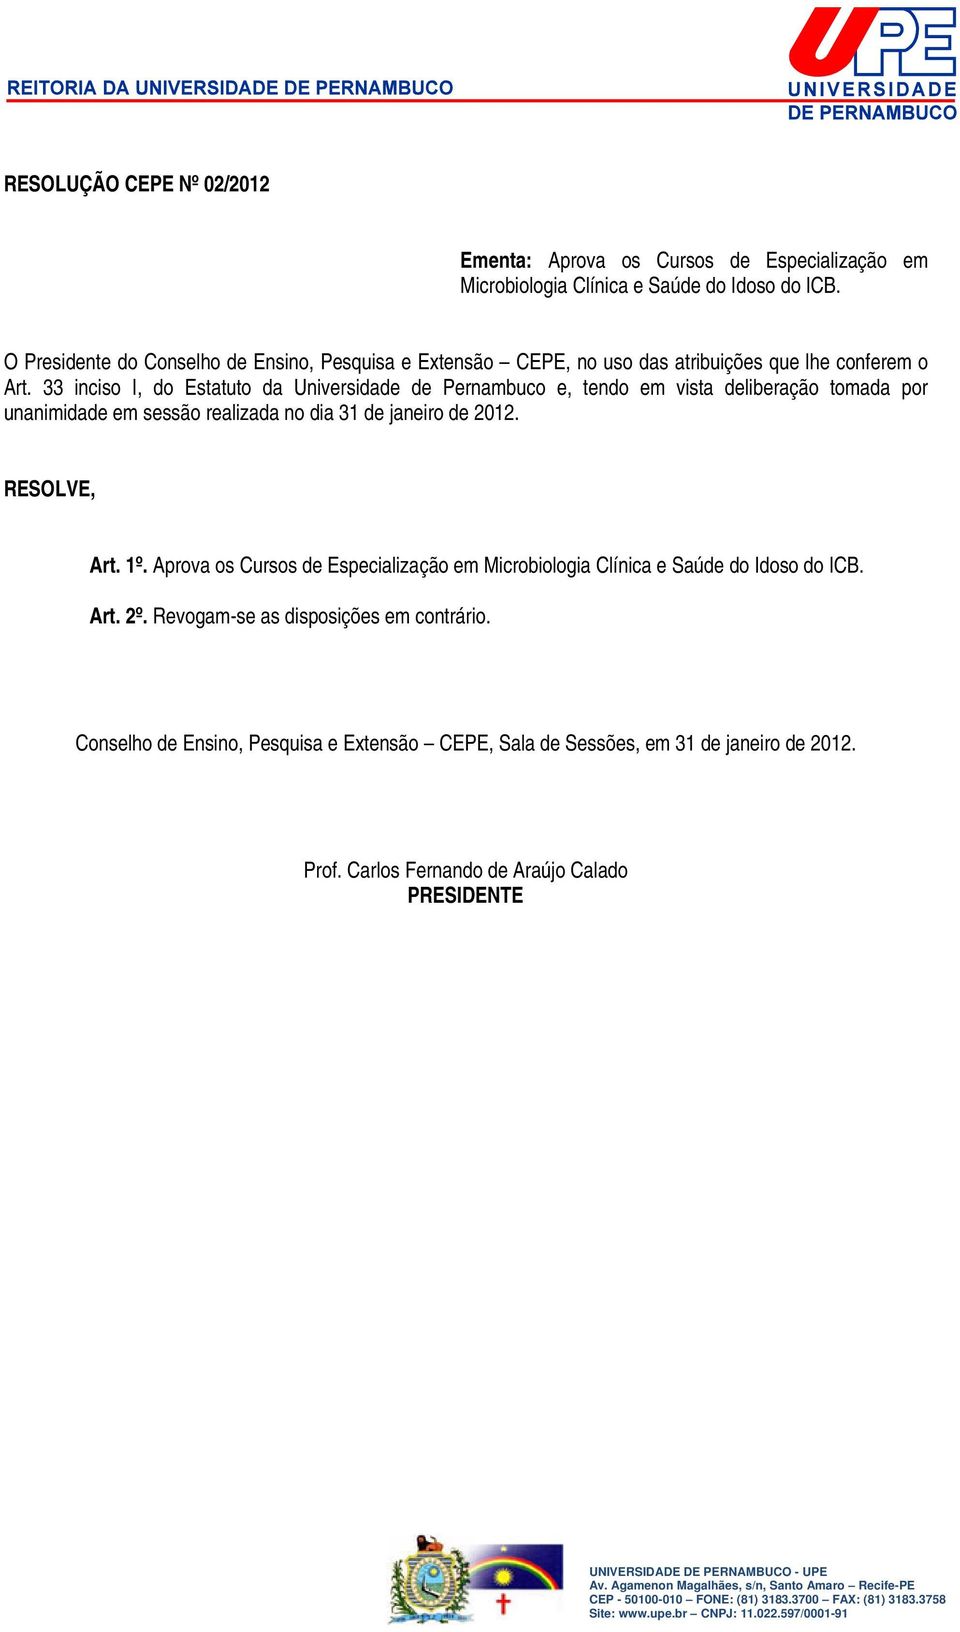 33 inciso I, do Estatuto da Universidade de Pernambuco e, tendo em vista deliberação tomada por unanimidade em sessão realizada no dia 31 de